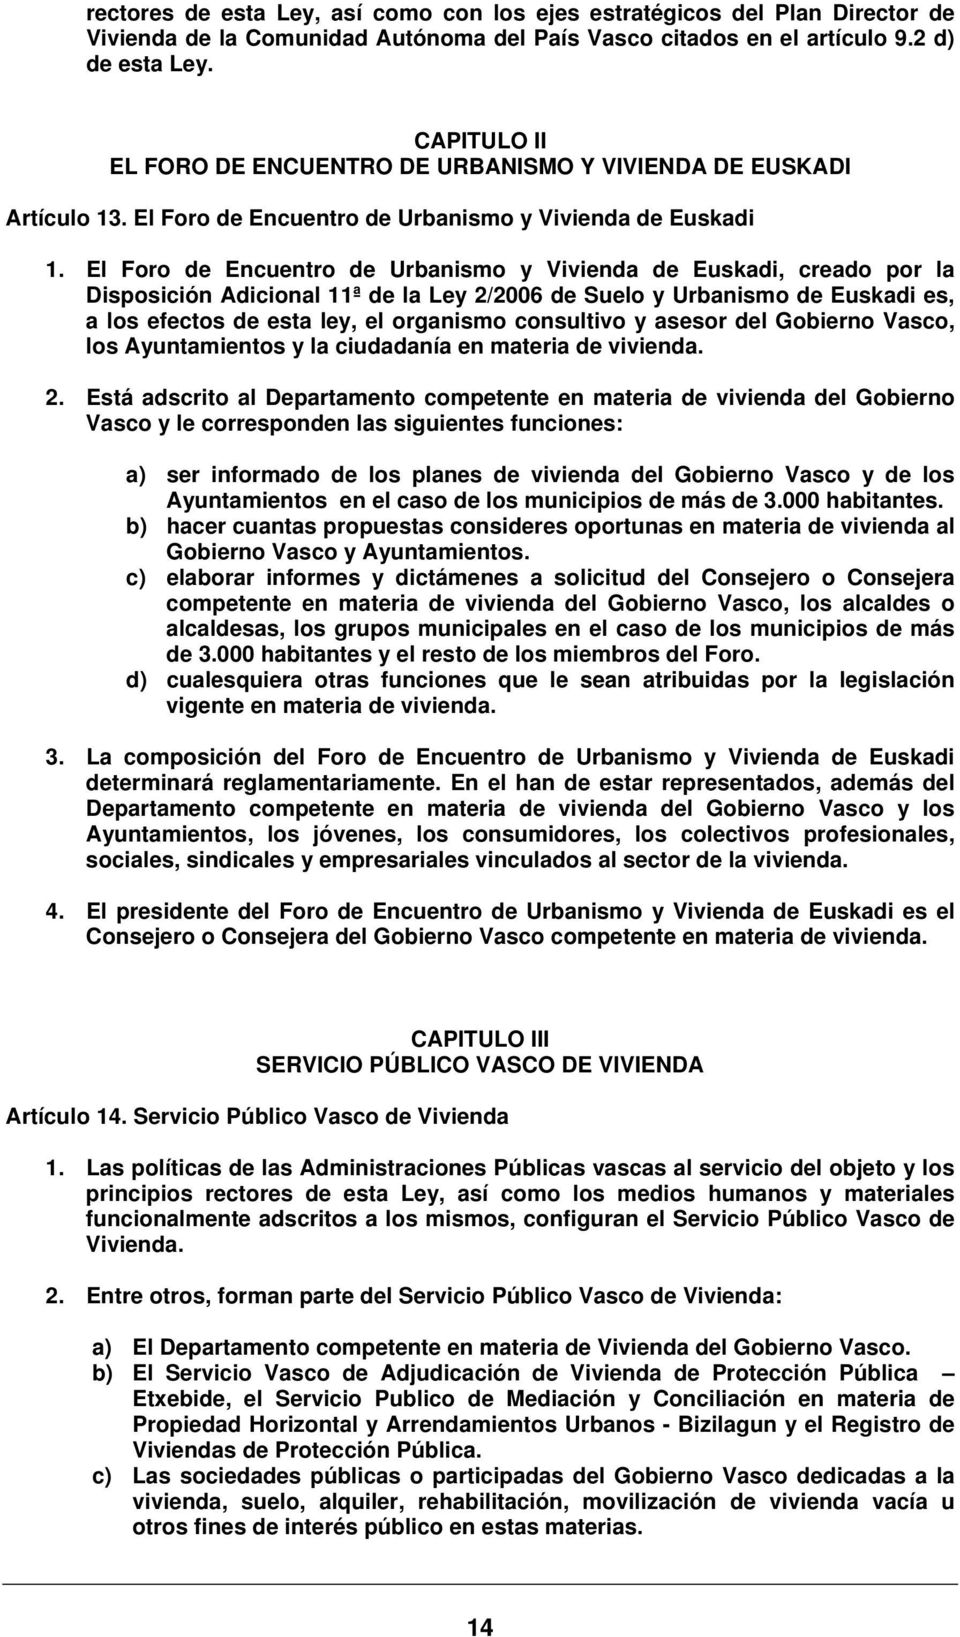 El Foro de Encuentro de Urbanismo y Vivienda de Euskadi, creado por la Disposición Adicional 11ª de la Ley 2/2006 de Suelo y Urbanismo de Euskadi es, a los efectos de esta ley, el organismo